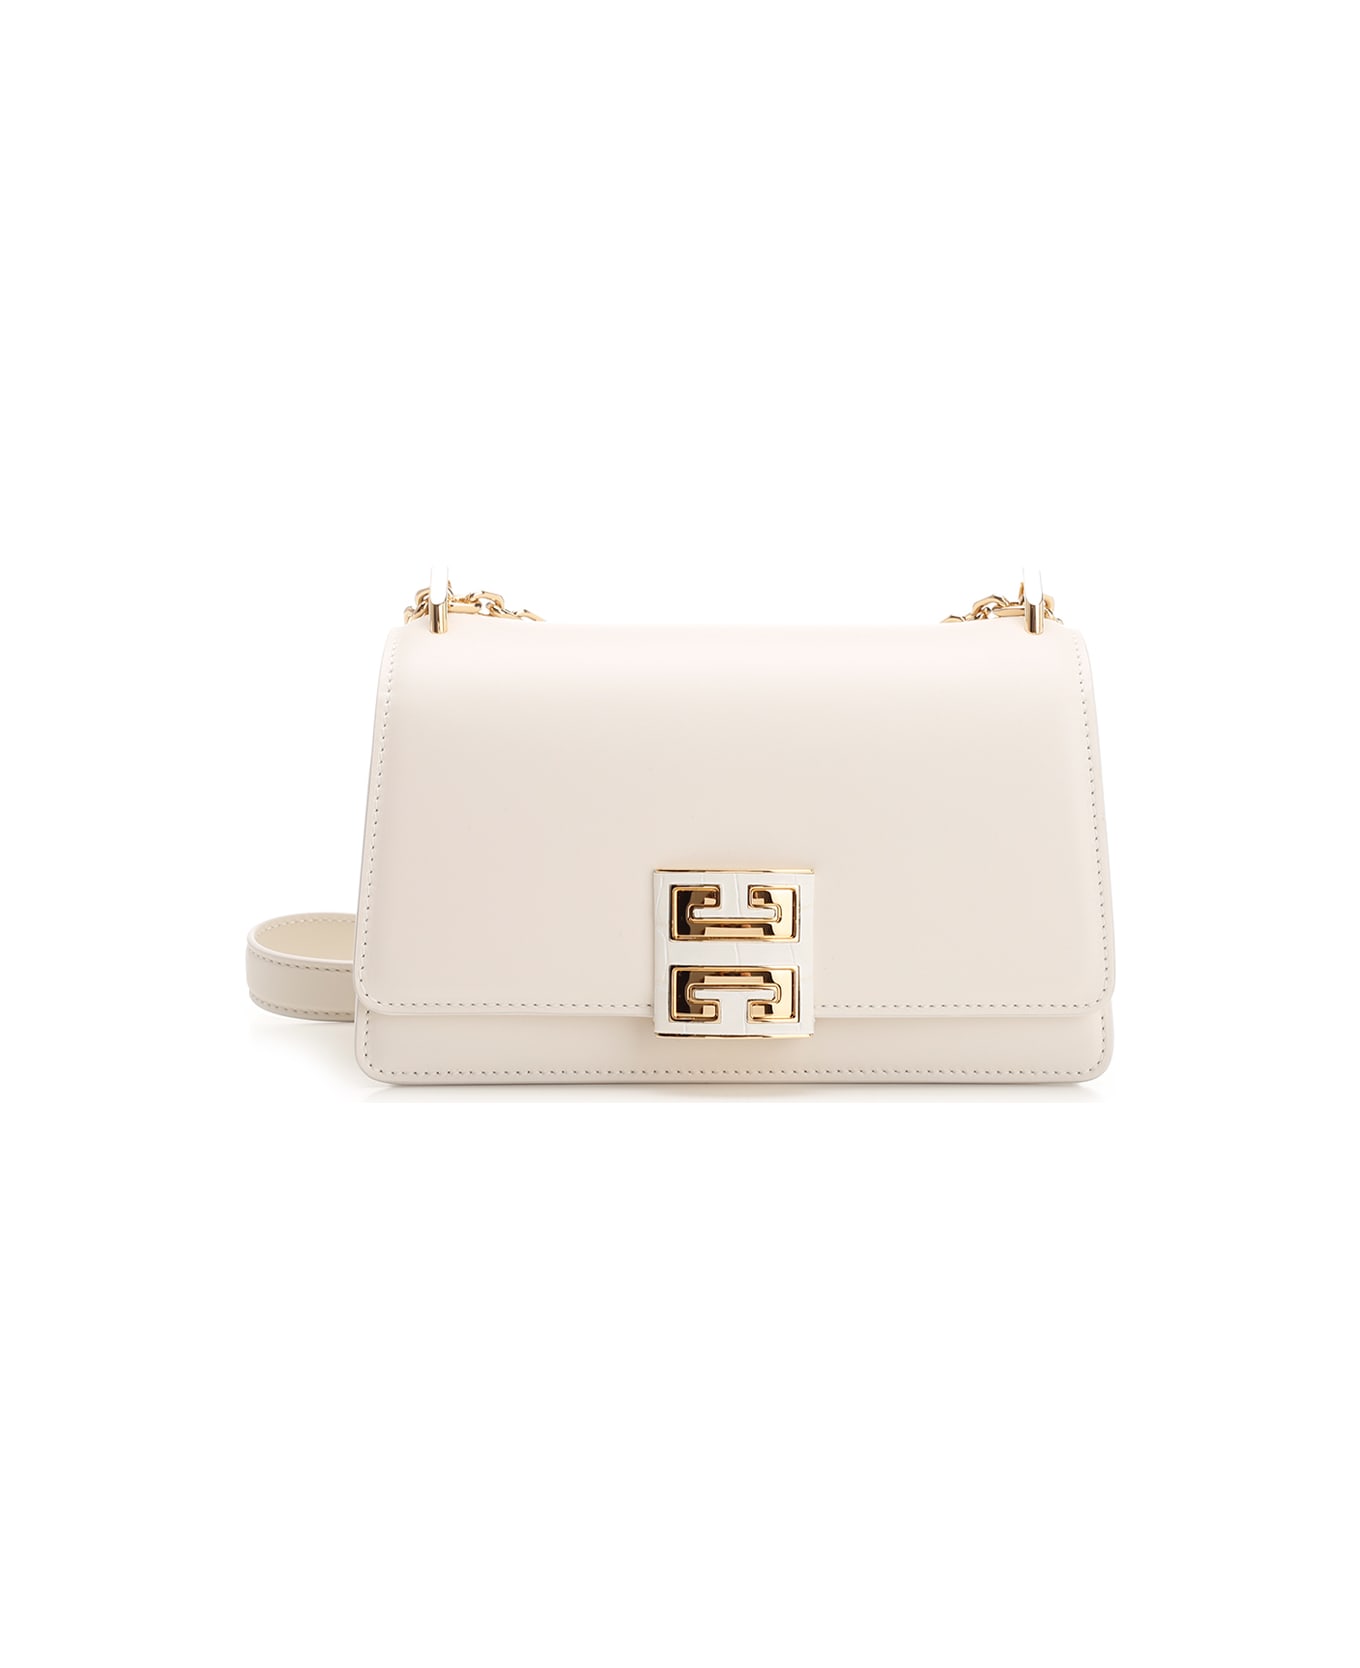 Givenchy 4g Small Shoulder Bag - White ショルダーバッグ